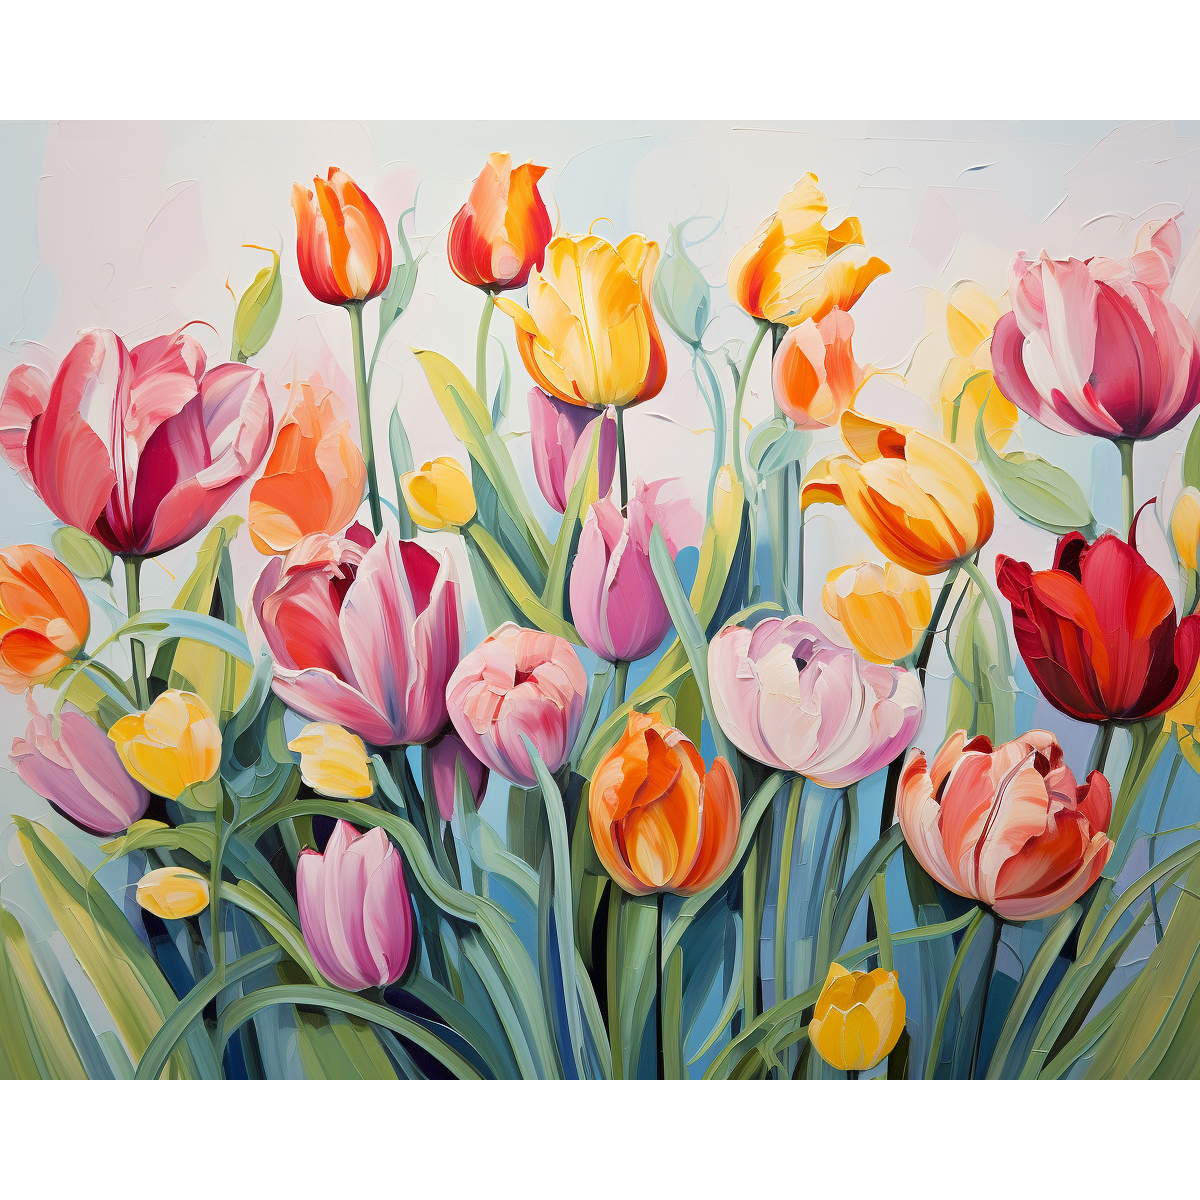 Réseau de tulipes colorées